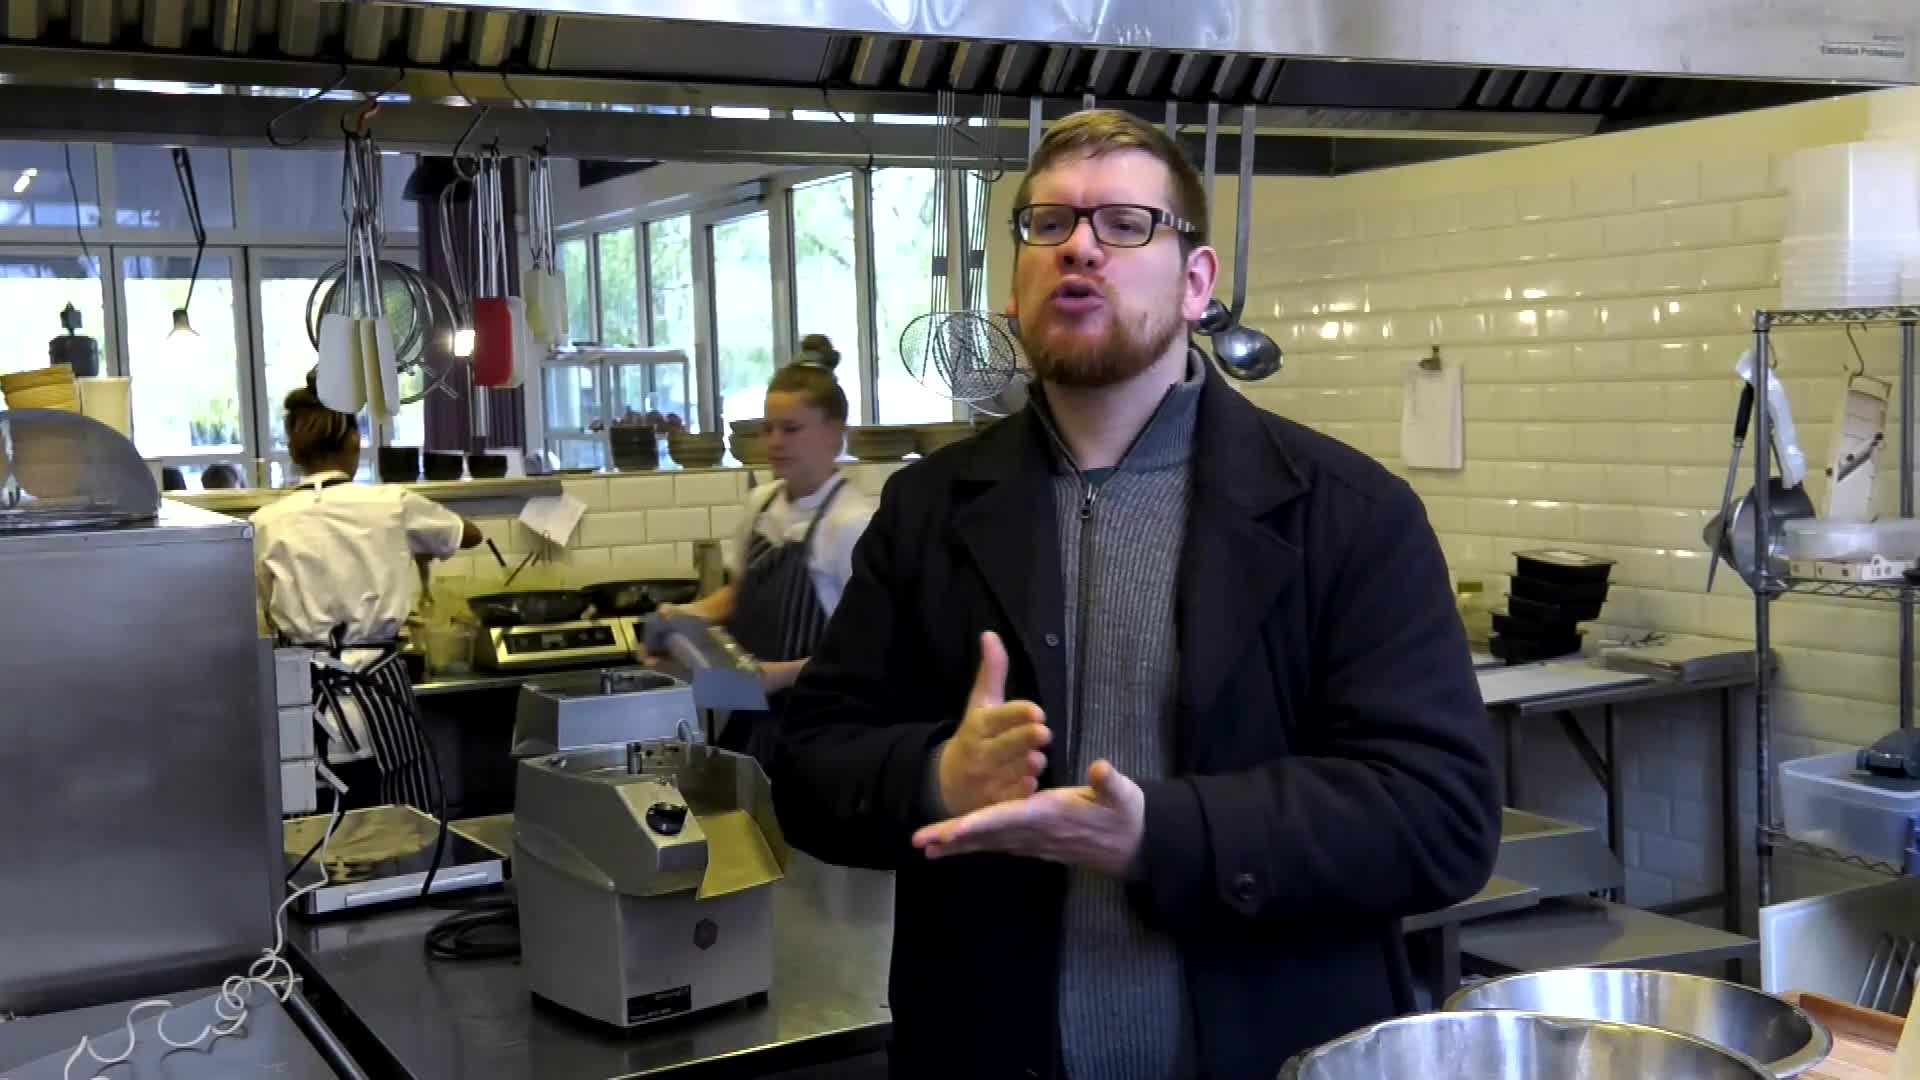 Klik for at se videoen "Når livet knækker: Bageren som blev allergisk"